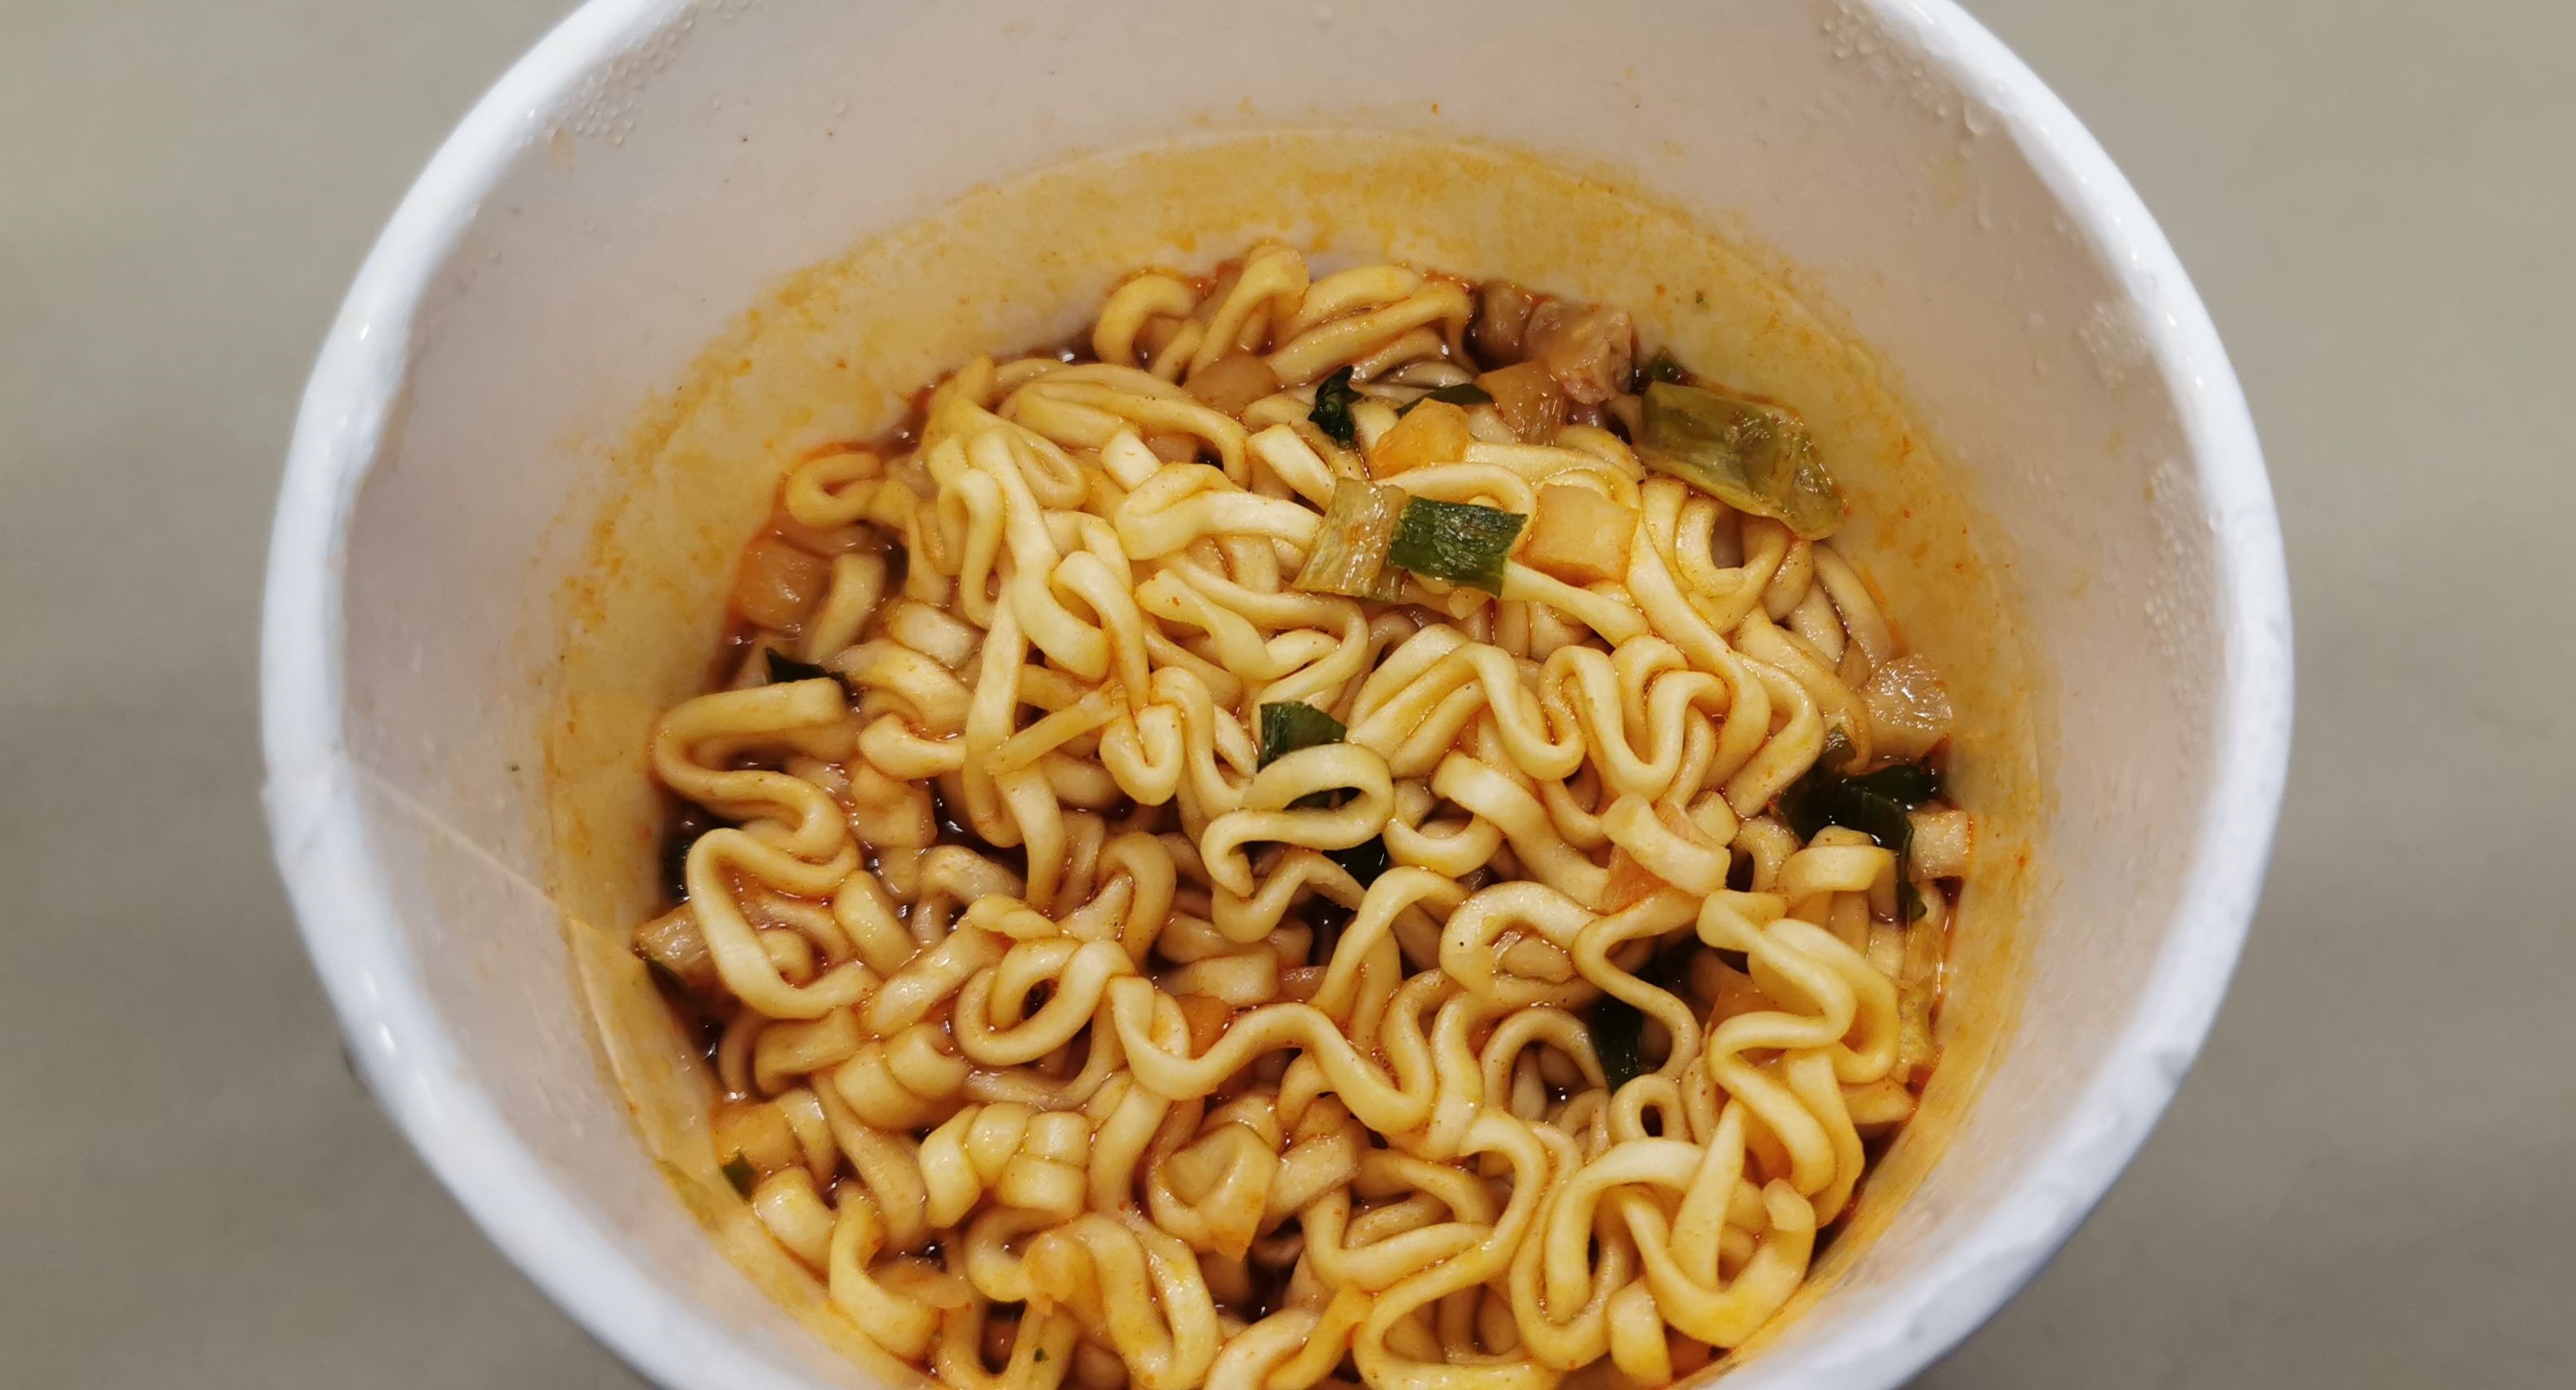 #2407: Samyang "Vegetasty Noodle Soup" Cup